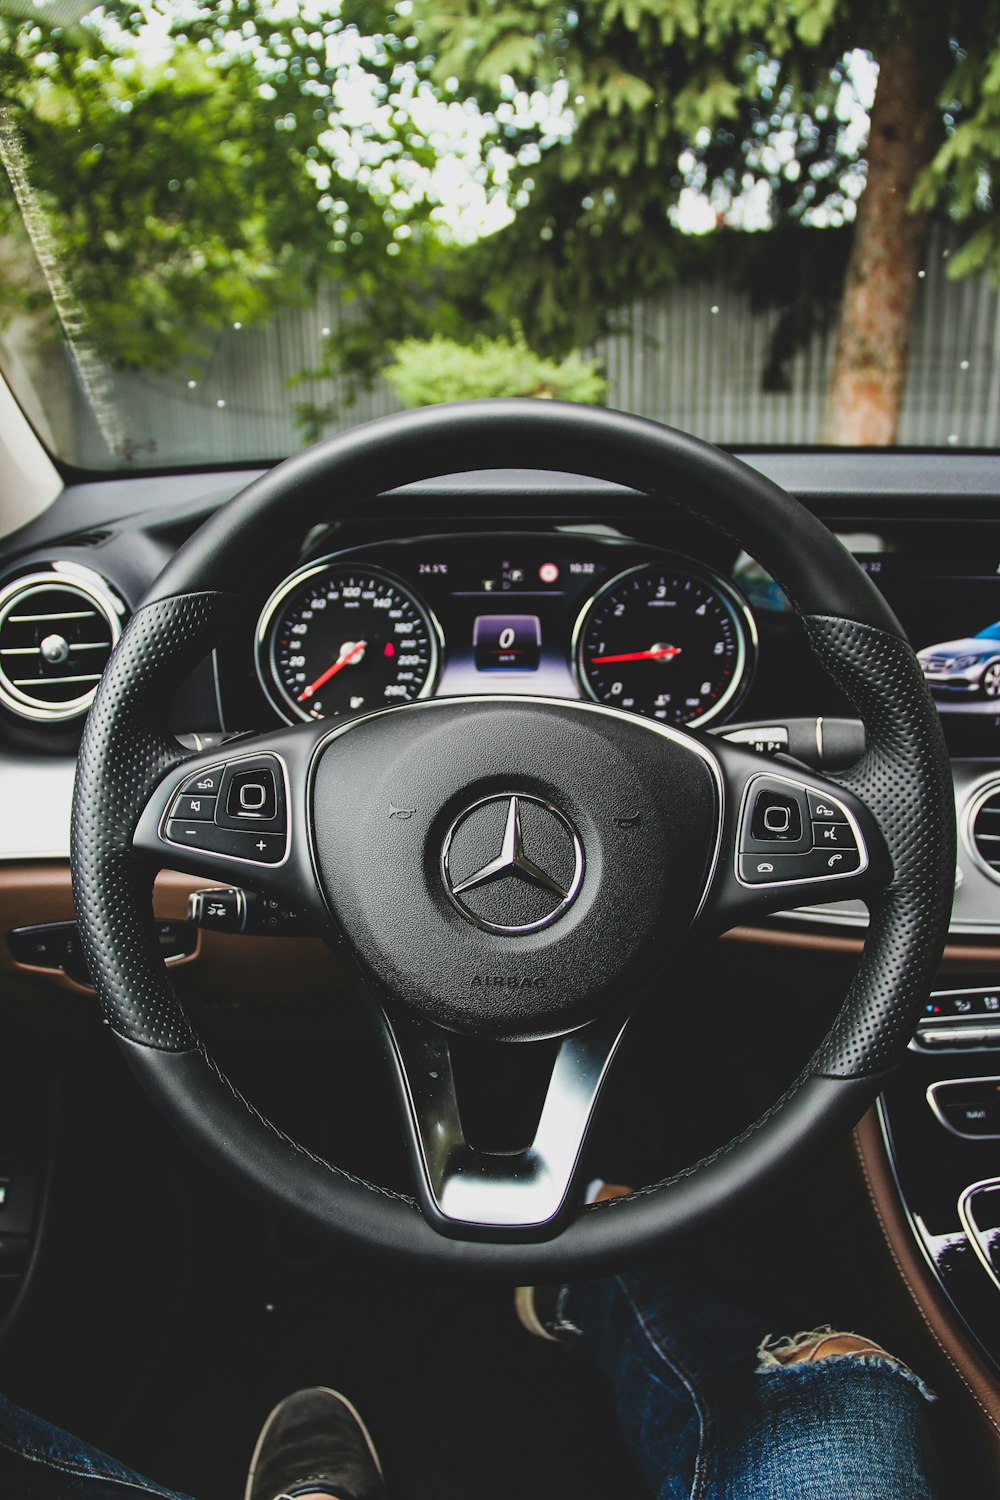 Black Mercedes Benz Steering Wheel Photo Free Steering Wheel Image On Unsplash